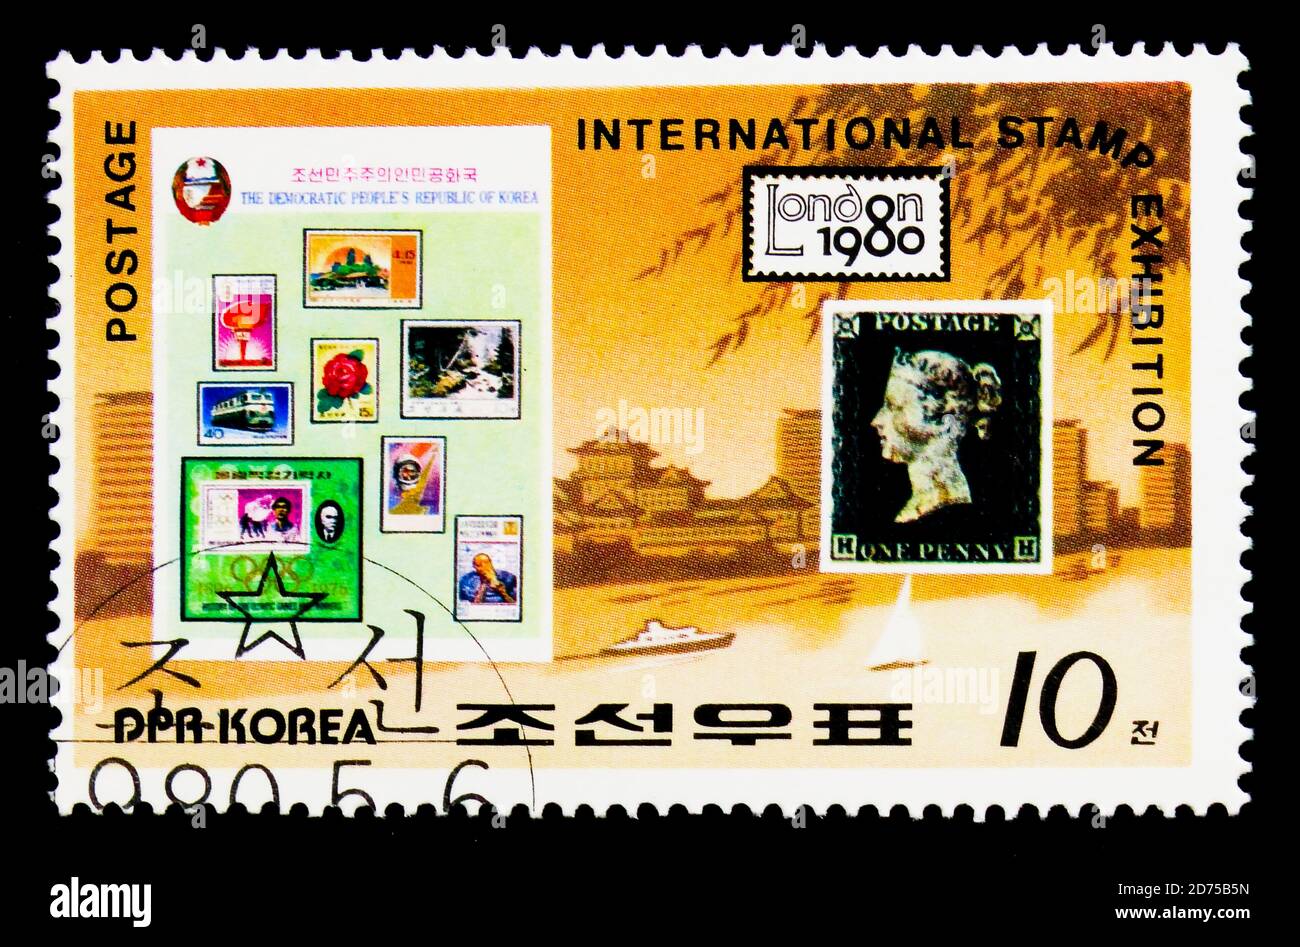 MOSCOU, RUSSIE - 25 NOVEMBRE 2017 : un timbre imprimé en république populaire démocratique de Corée montre la Grande-Bretagne 1 et les timbres coréens, International St Banque D'Images